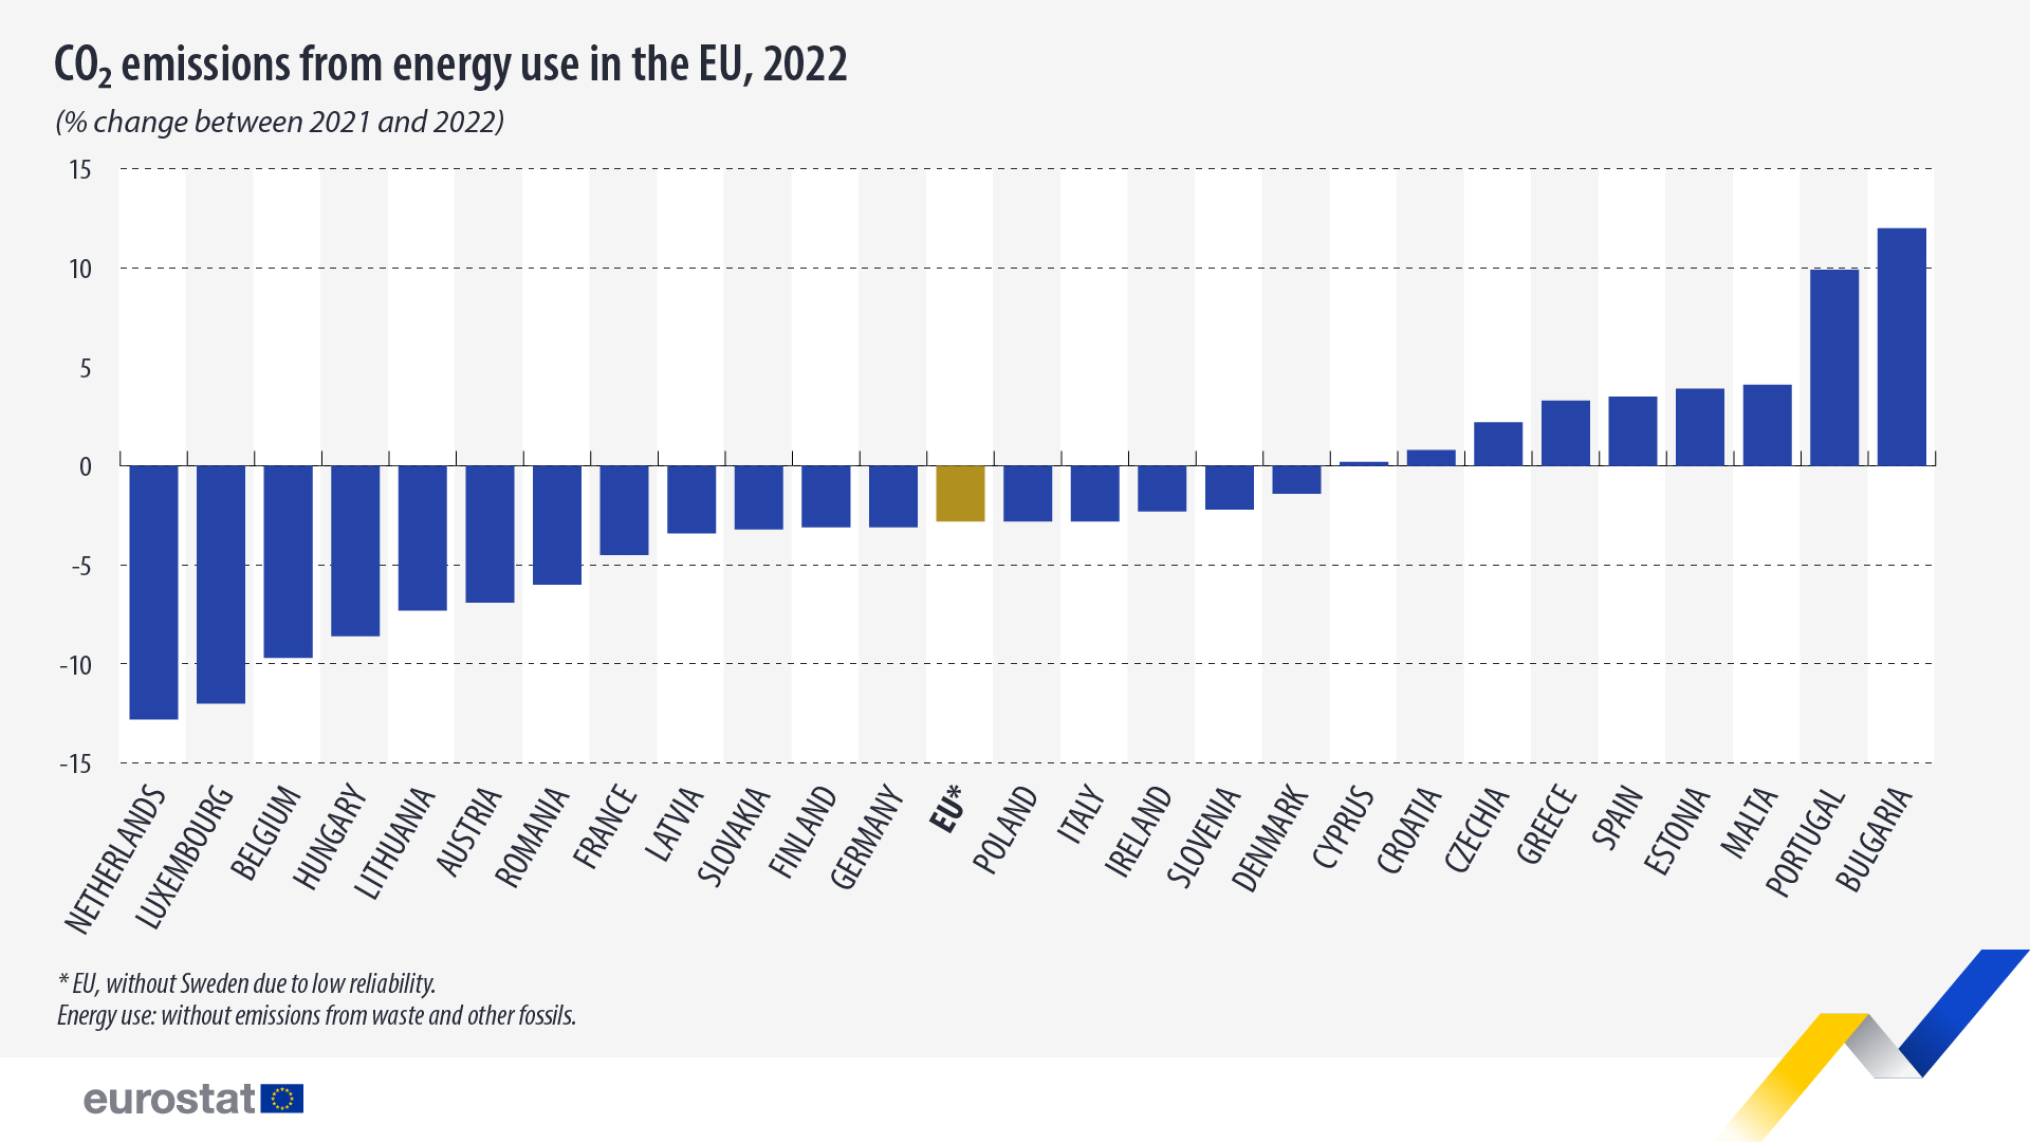 co2-emissions-energy-use-2022